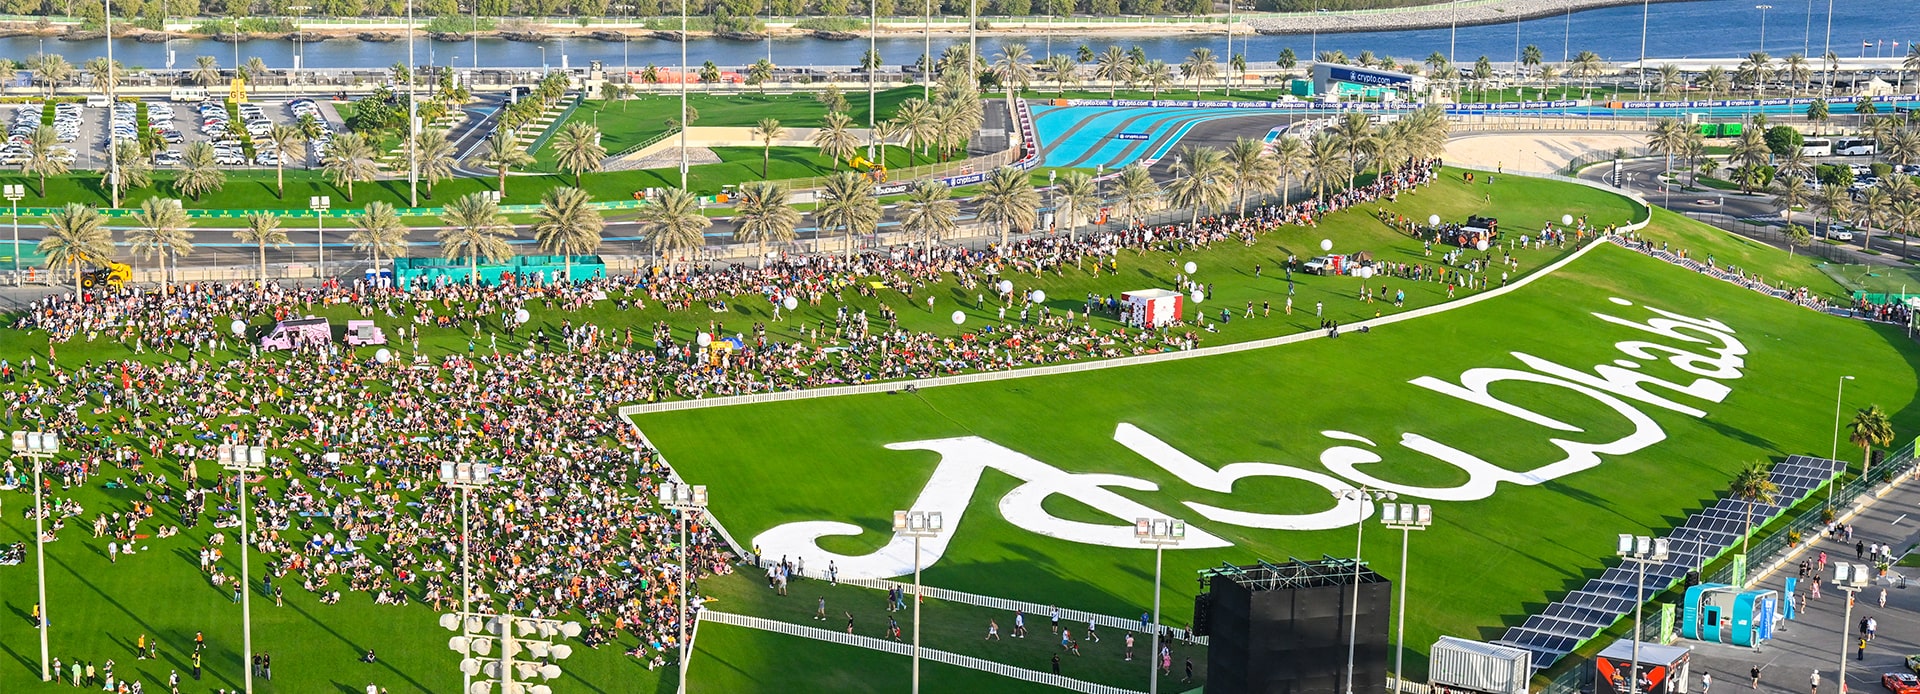 منظر لسباق السيارات في الماضي من تل أبو ظبي خلال سباق الجائزة الكبرى للفورمولا 1 أبو ظبي.